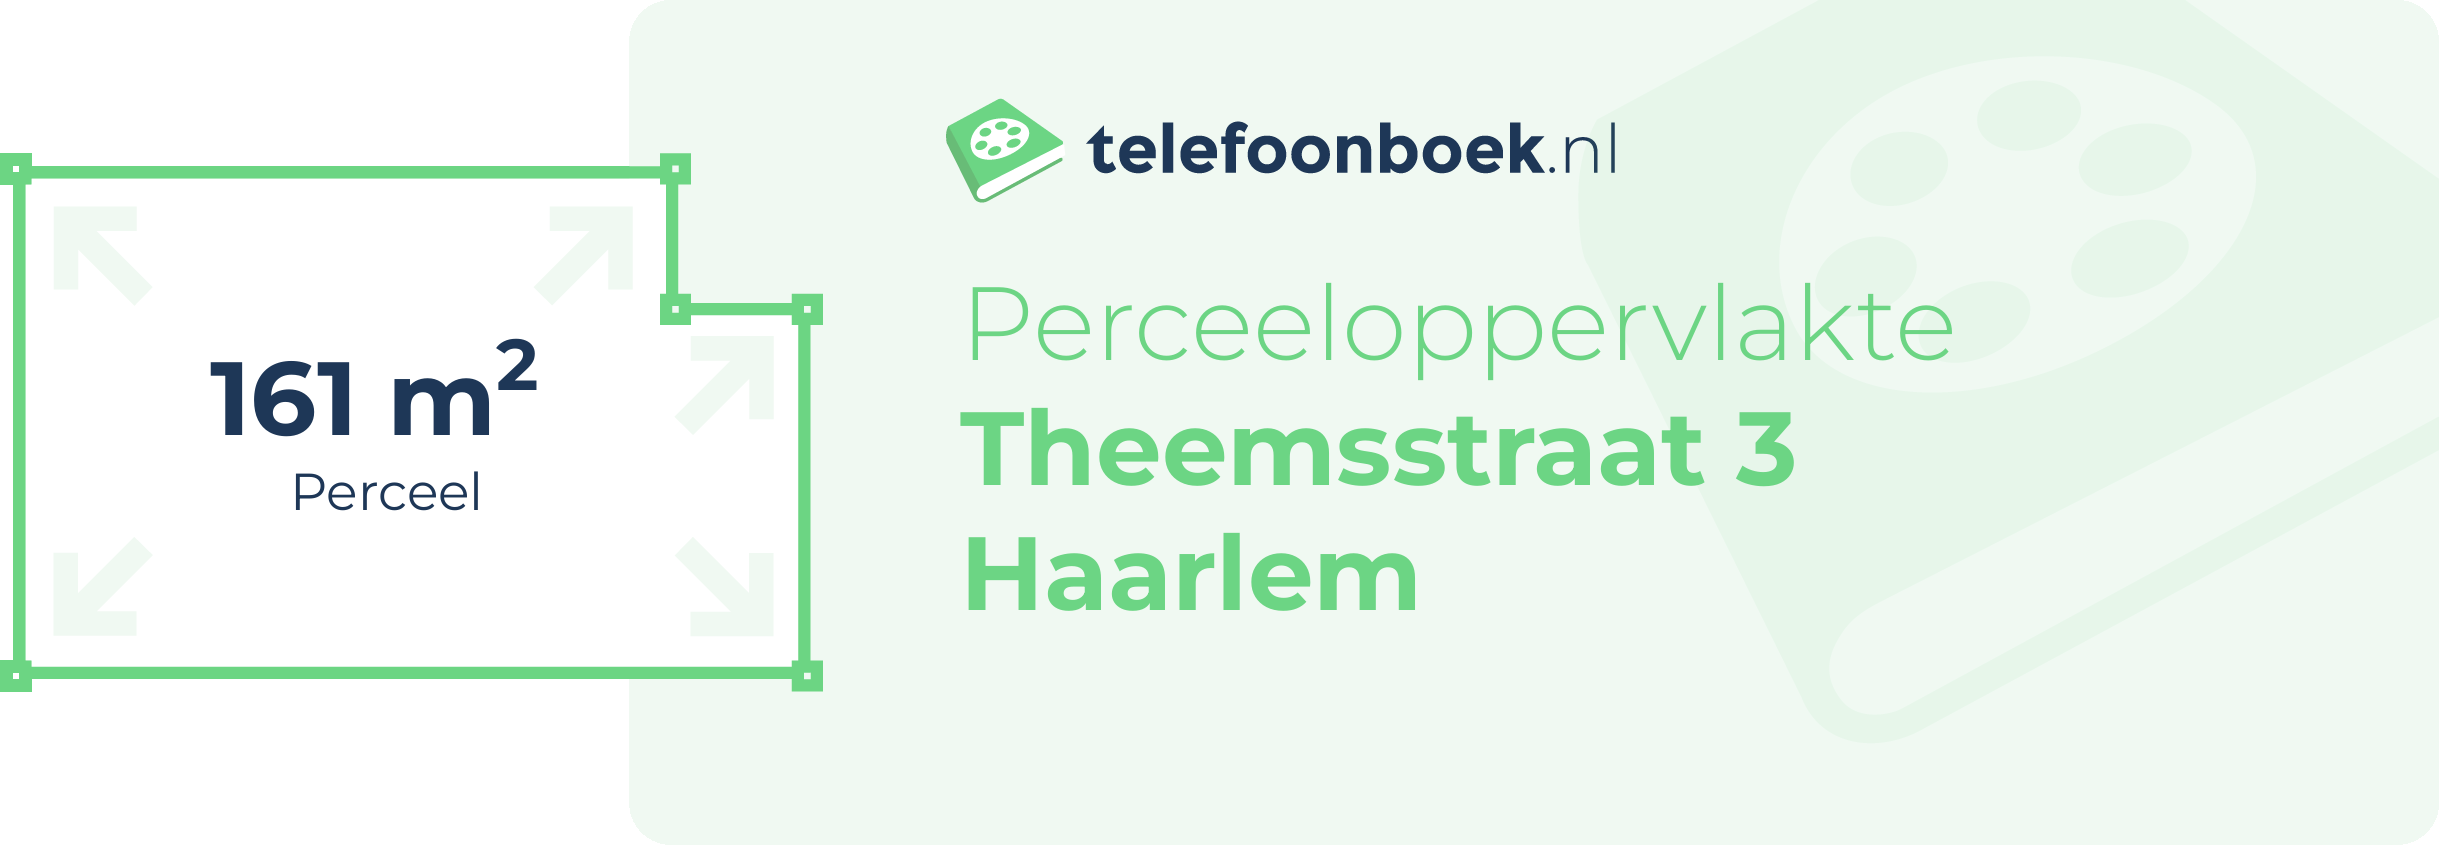 Perceeloppervlakte Theemsstraat 3 Haarlem